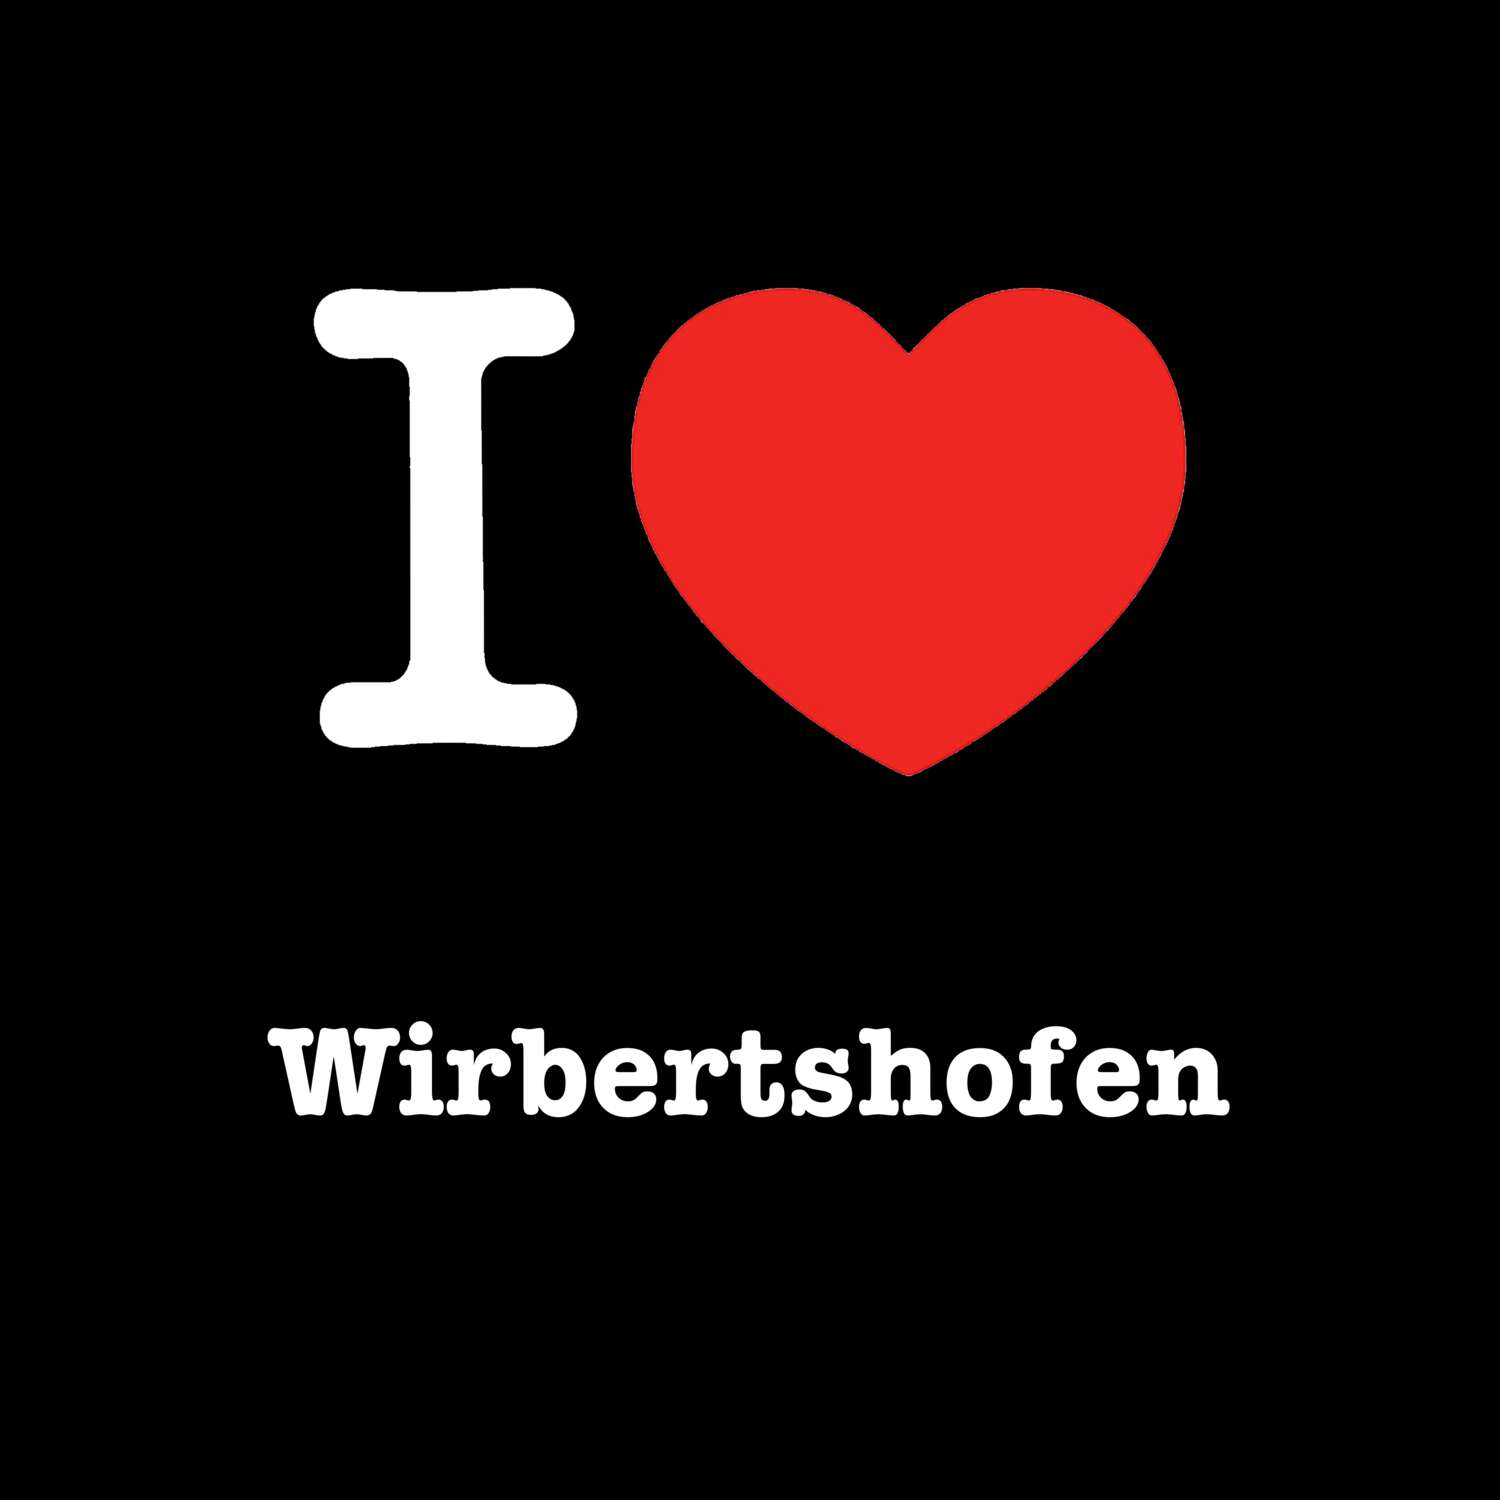 Wirbertshofen T-Shirt »I love«